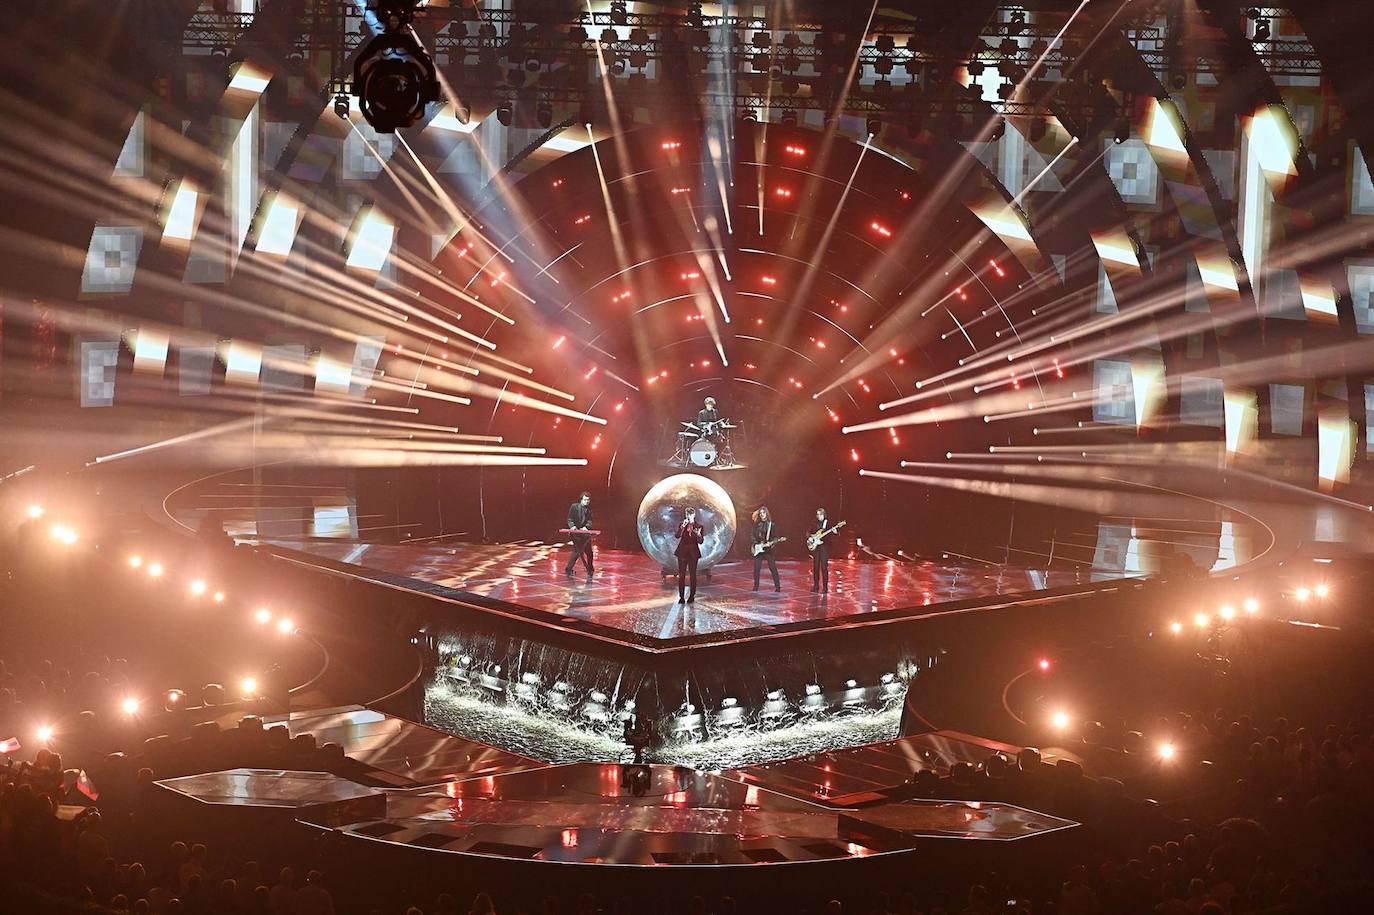 Fotos: Primera Semifinal del 66º Festival Anual de la Canción de Eurovisión